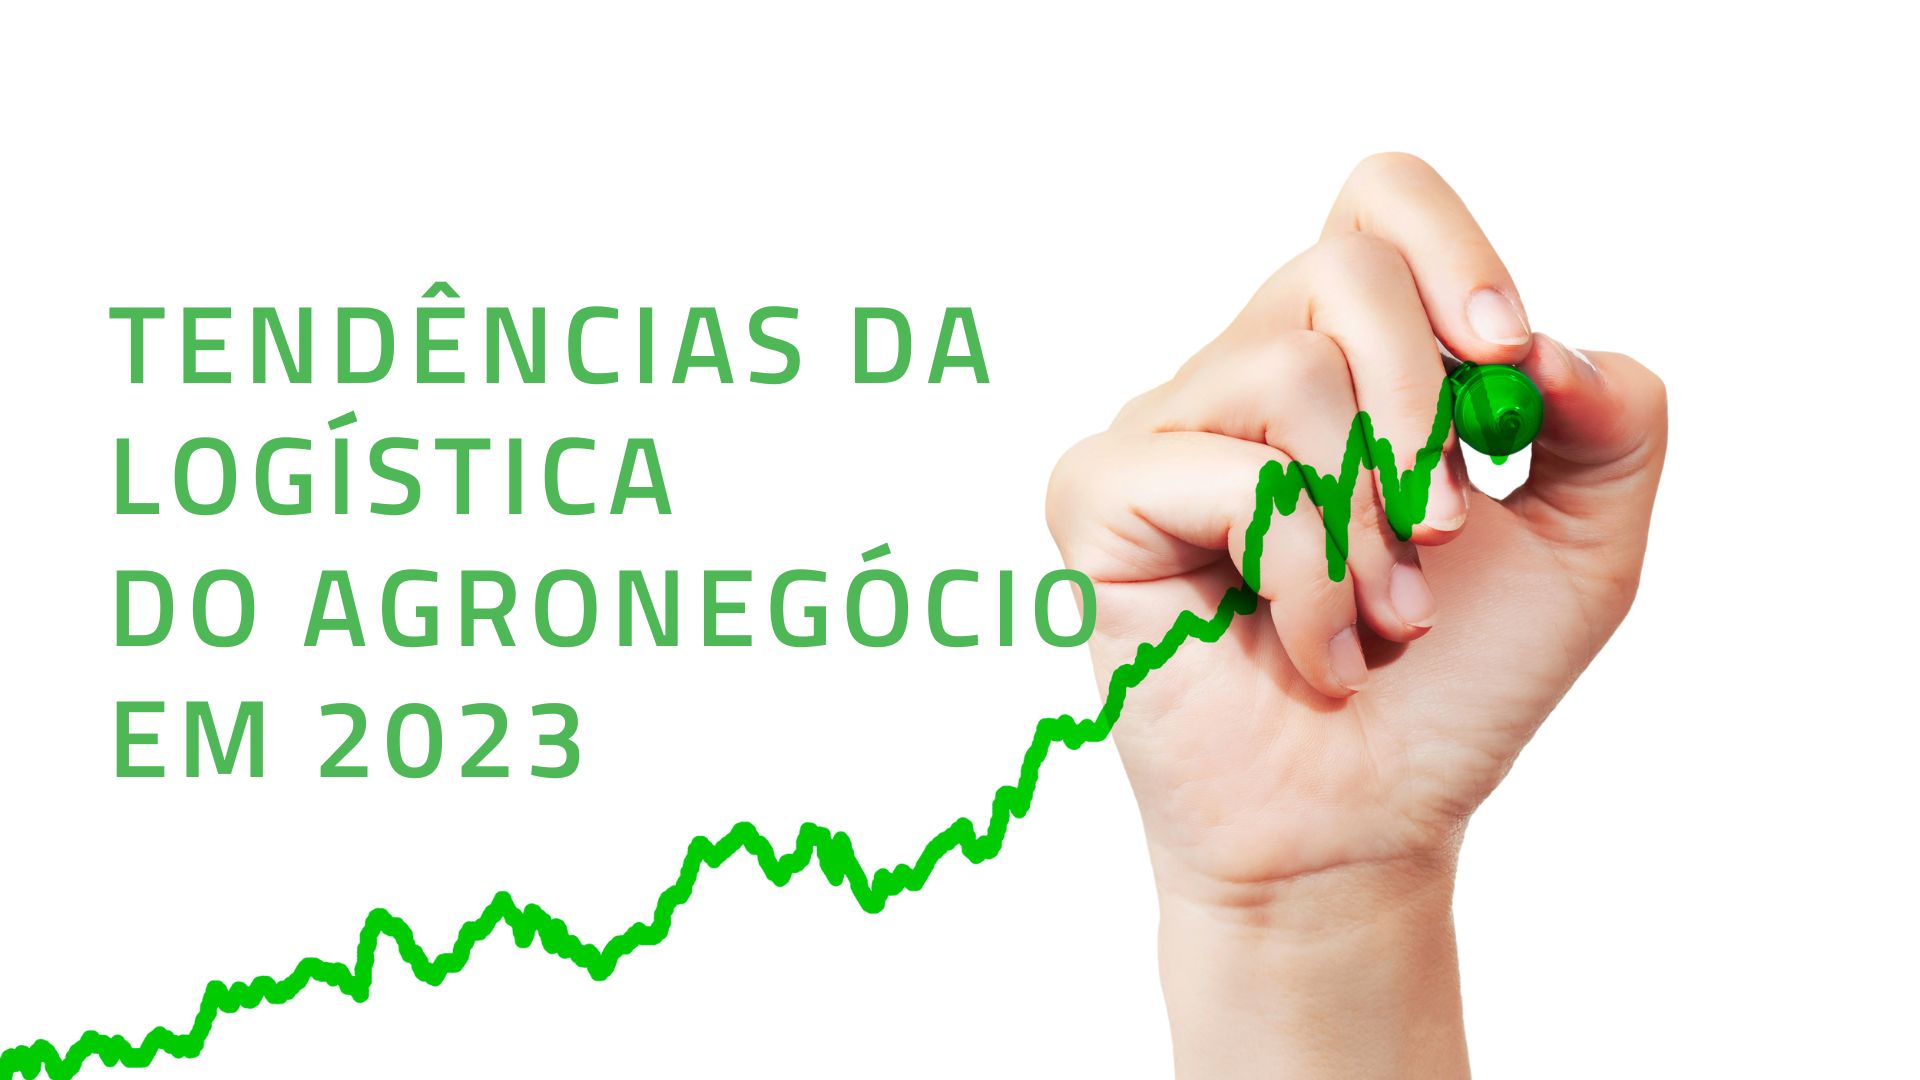 Prompt Brazil Logistics - Entenda tudo sobre os nossos serviços para o Agronegócio brasileiro